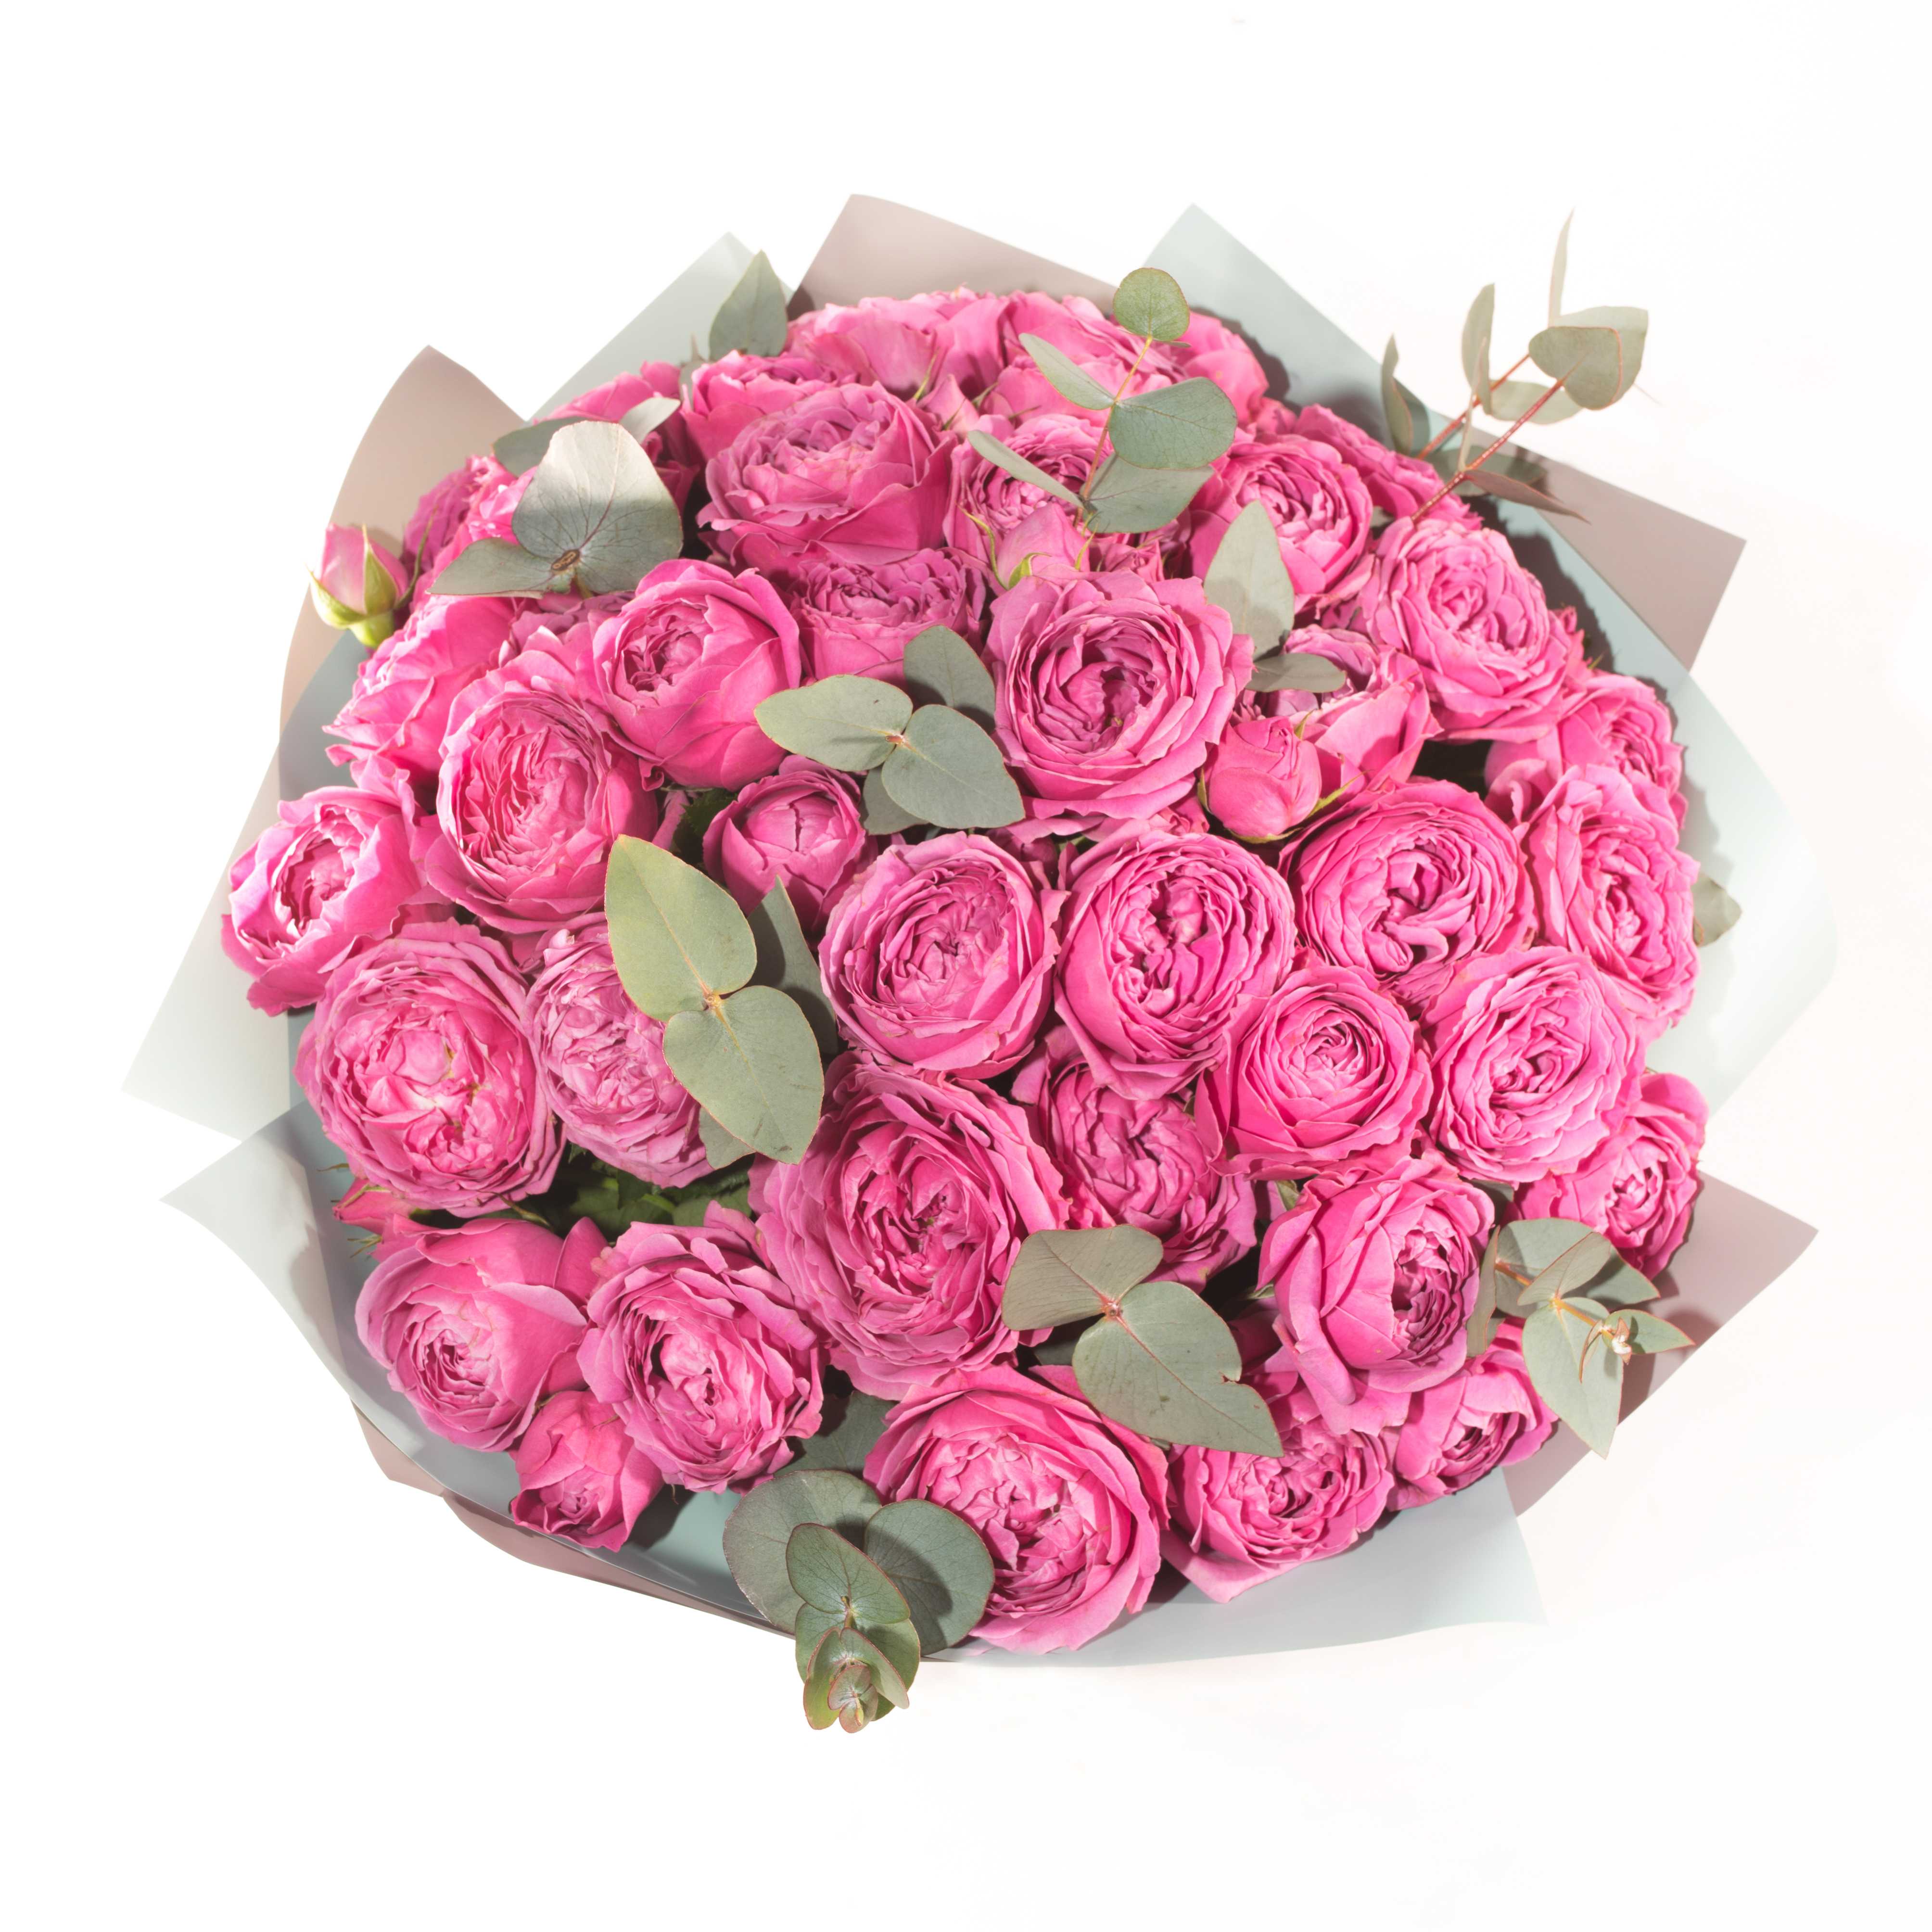 ✅ о розе misty bubbles: описание и характеристики сорта кустовой розы